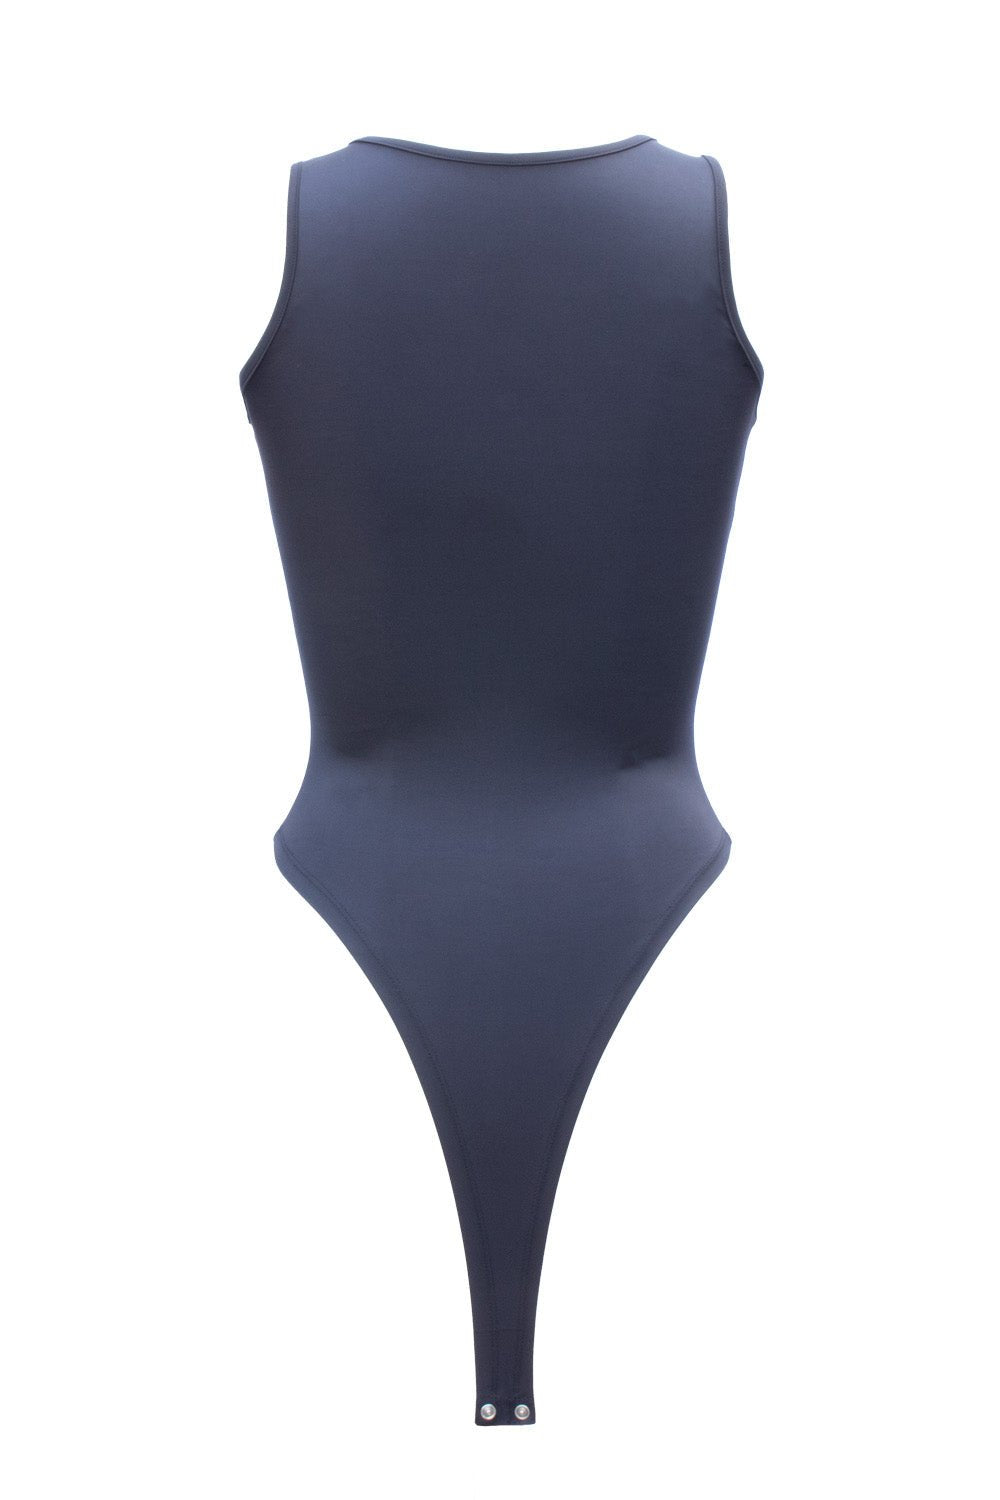 Ashen Grey Nyx Zip Up Swimsuit - BEEGLEE